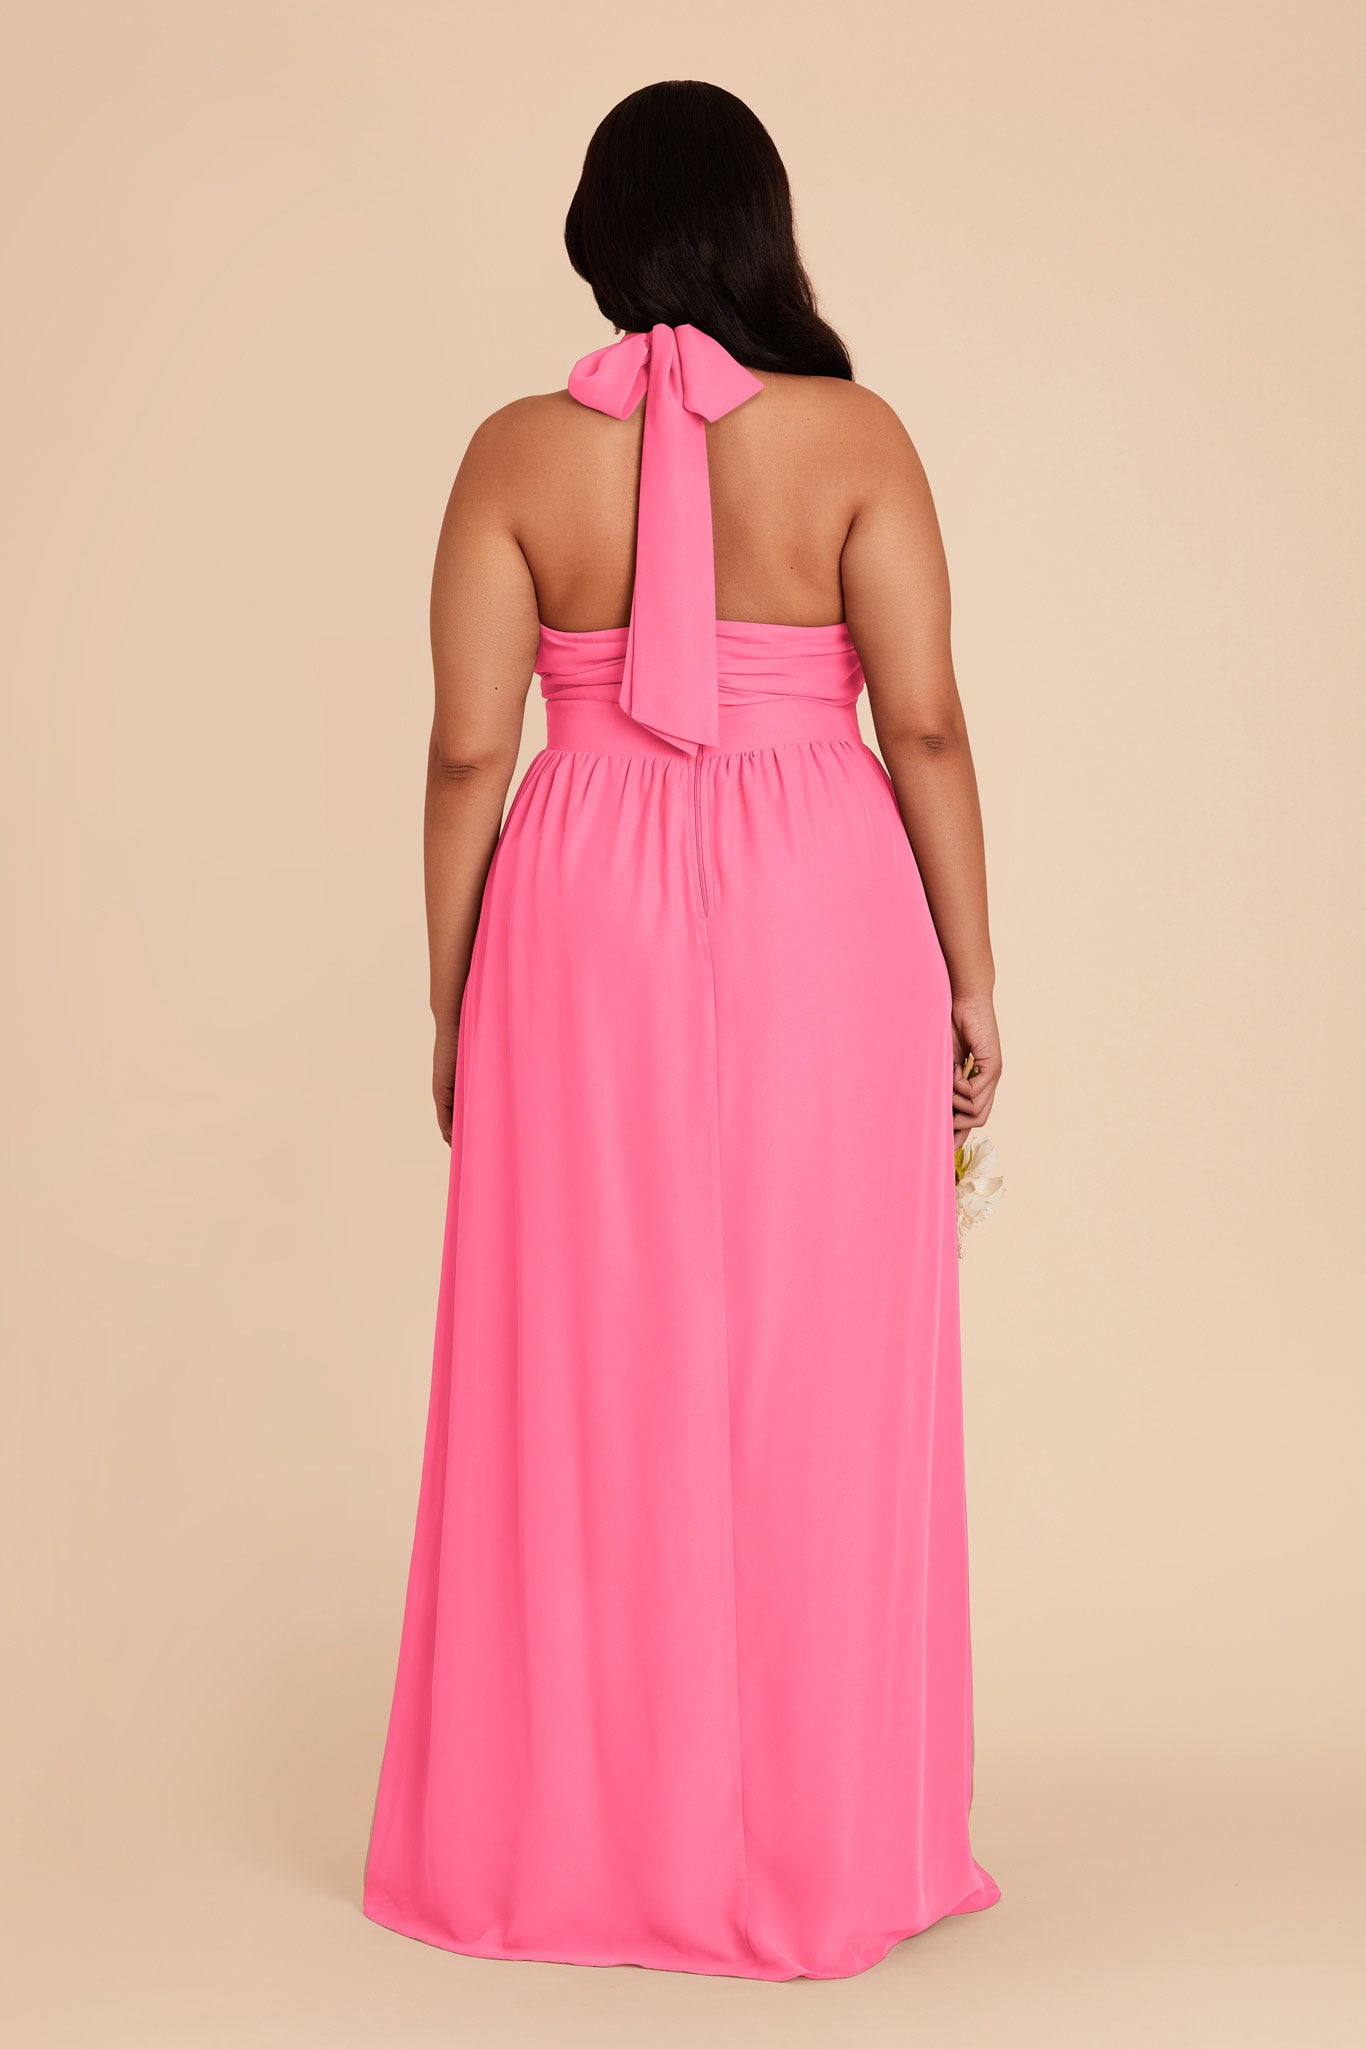 Bon Bon Pink Joyce Chiffon Dress by Birdy Grey